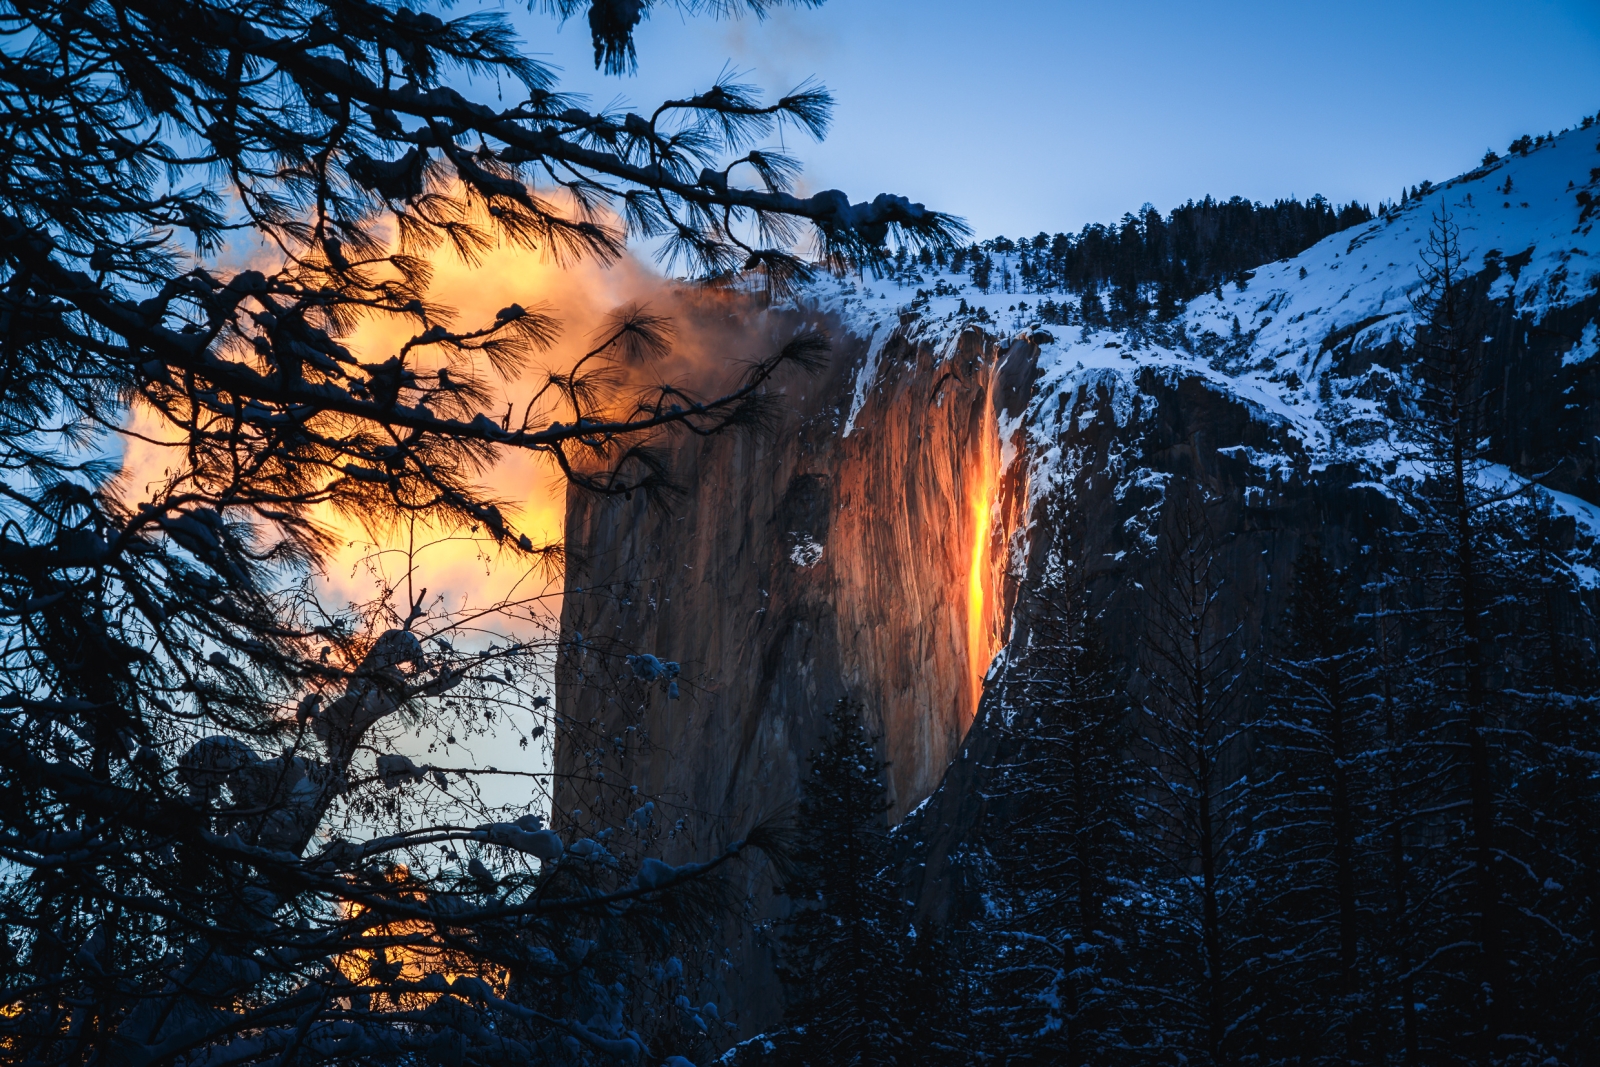 Yosemite in the Spring - Adobe Stock Image 